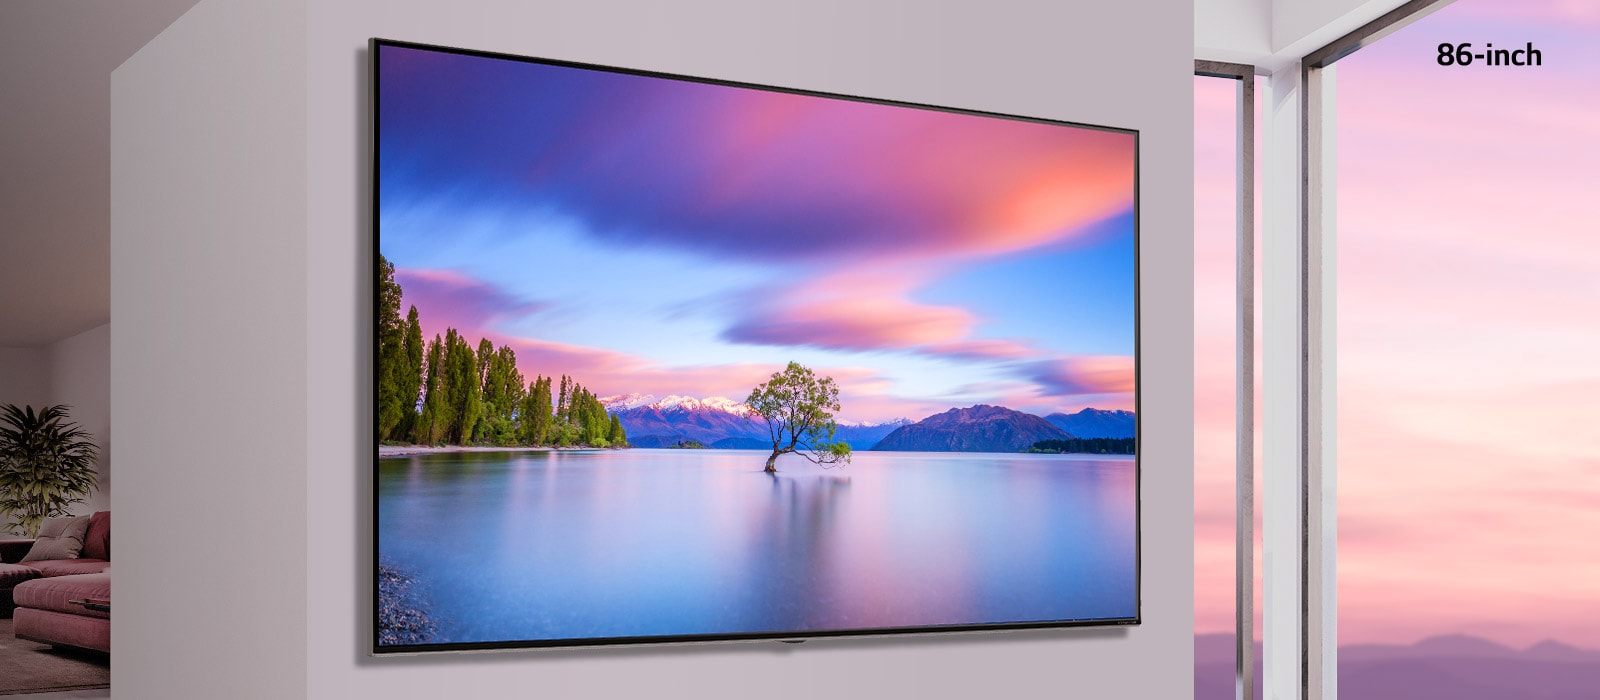 Una escena que muestra un televisor de pantalla plana montado en una pared blanca. A medida que la imagen se desplaza de lado a lado, la imagen cambia de un televisor de 55 pulgadas a uno de 86.